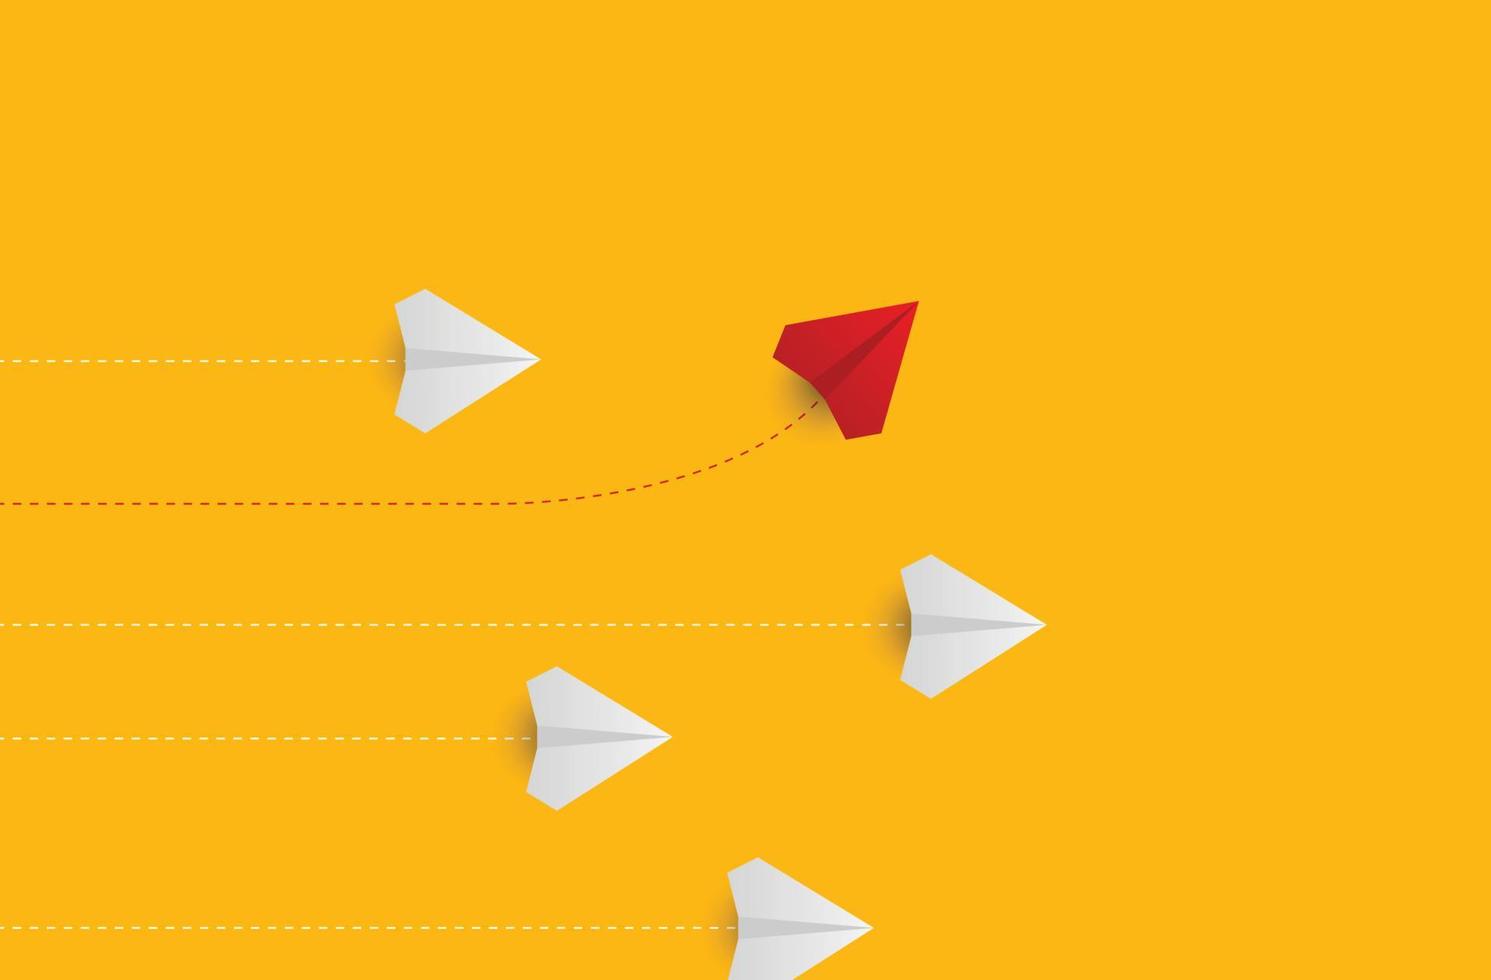 kreativa pappersplan på gul bakgrund. ledarskap och framgång concept.group av vita pappersplan i en riktning och ett rött pappersplan som pekar på olika sätt. vektor illustration